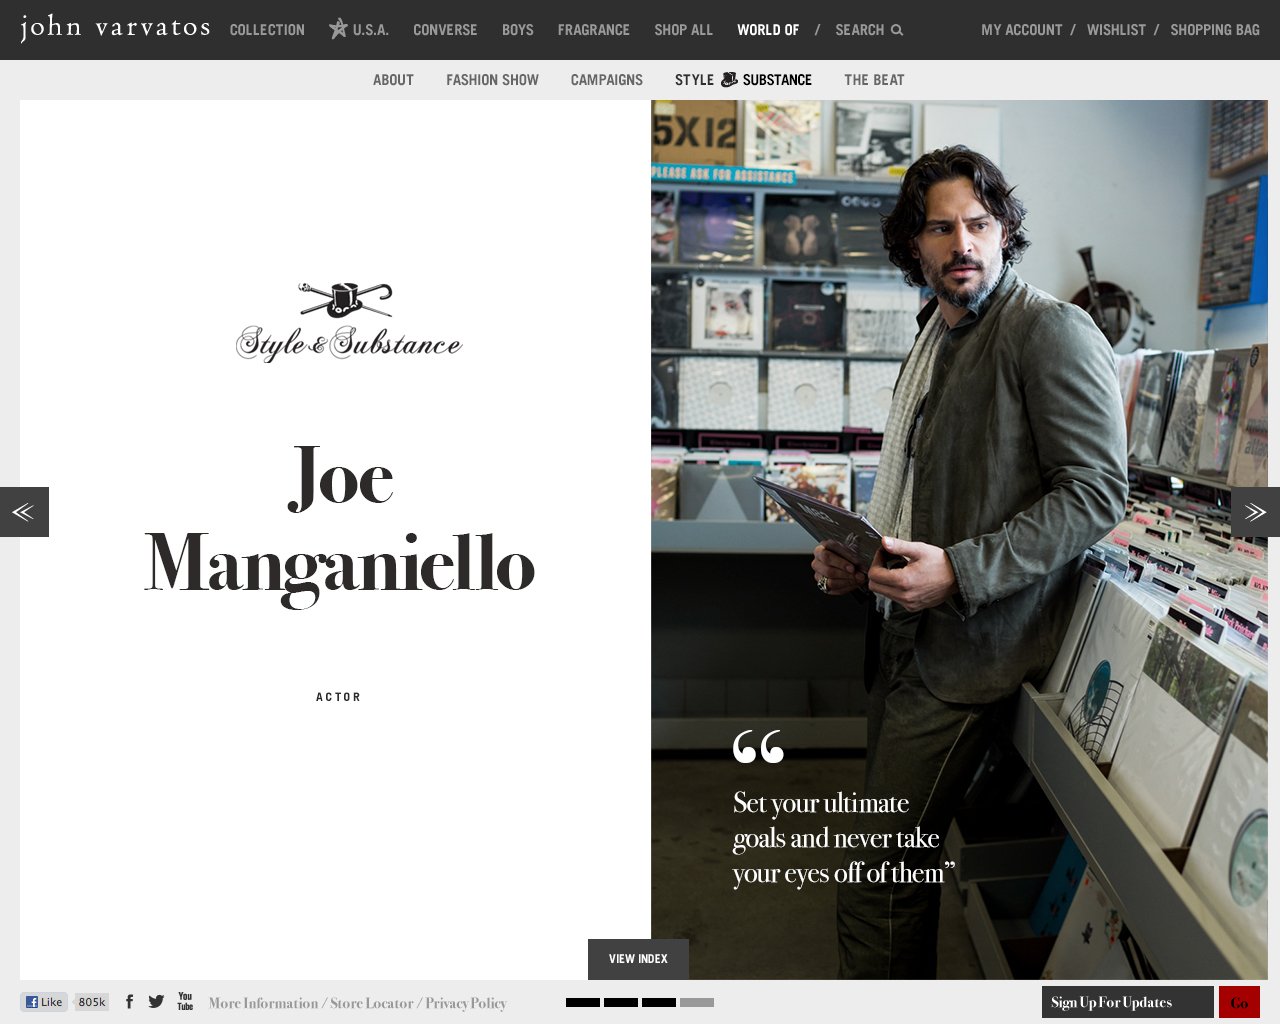 John Varvatos Style Substanfce Joe Manganiello